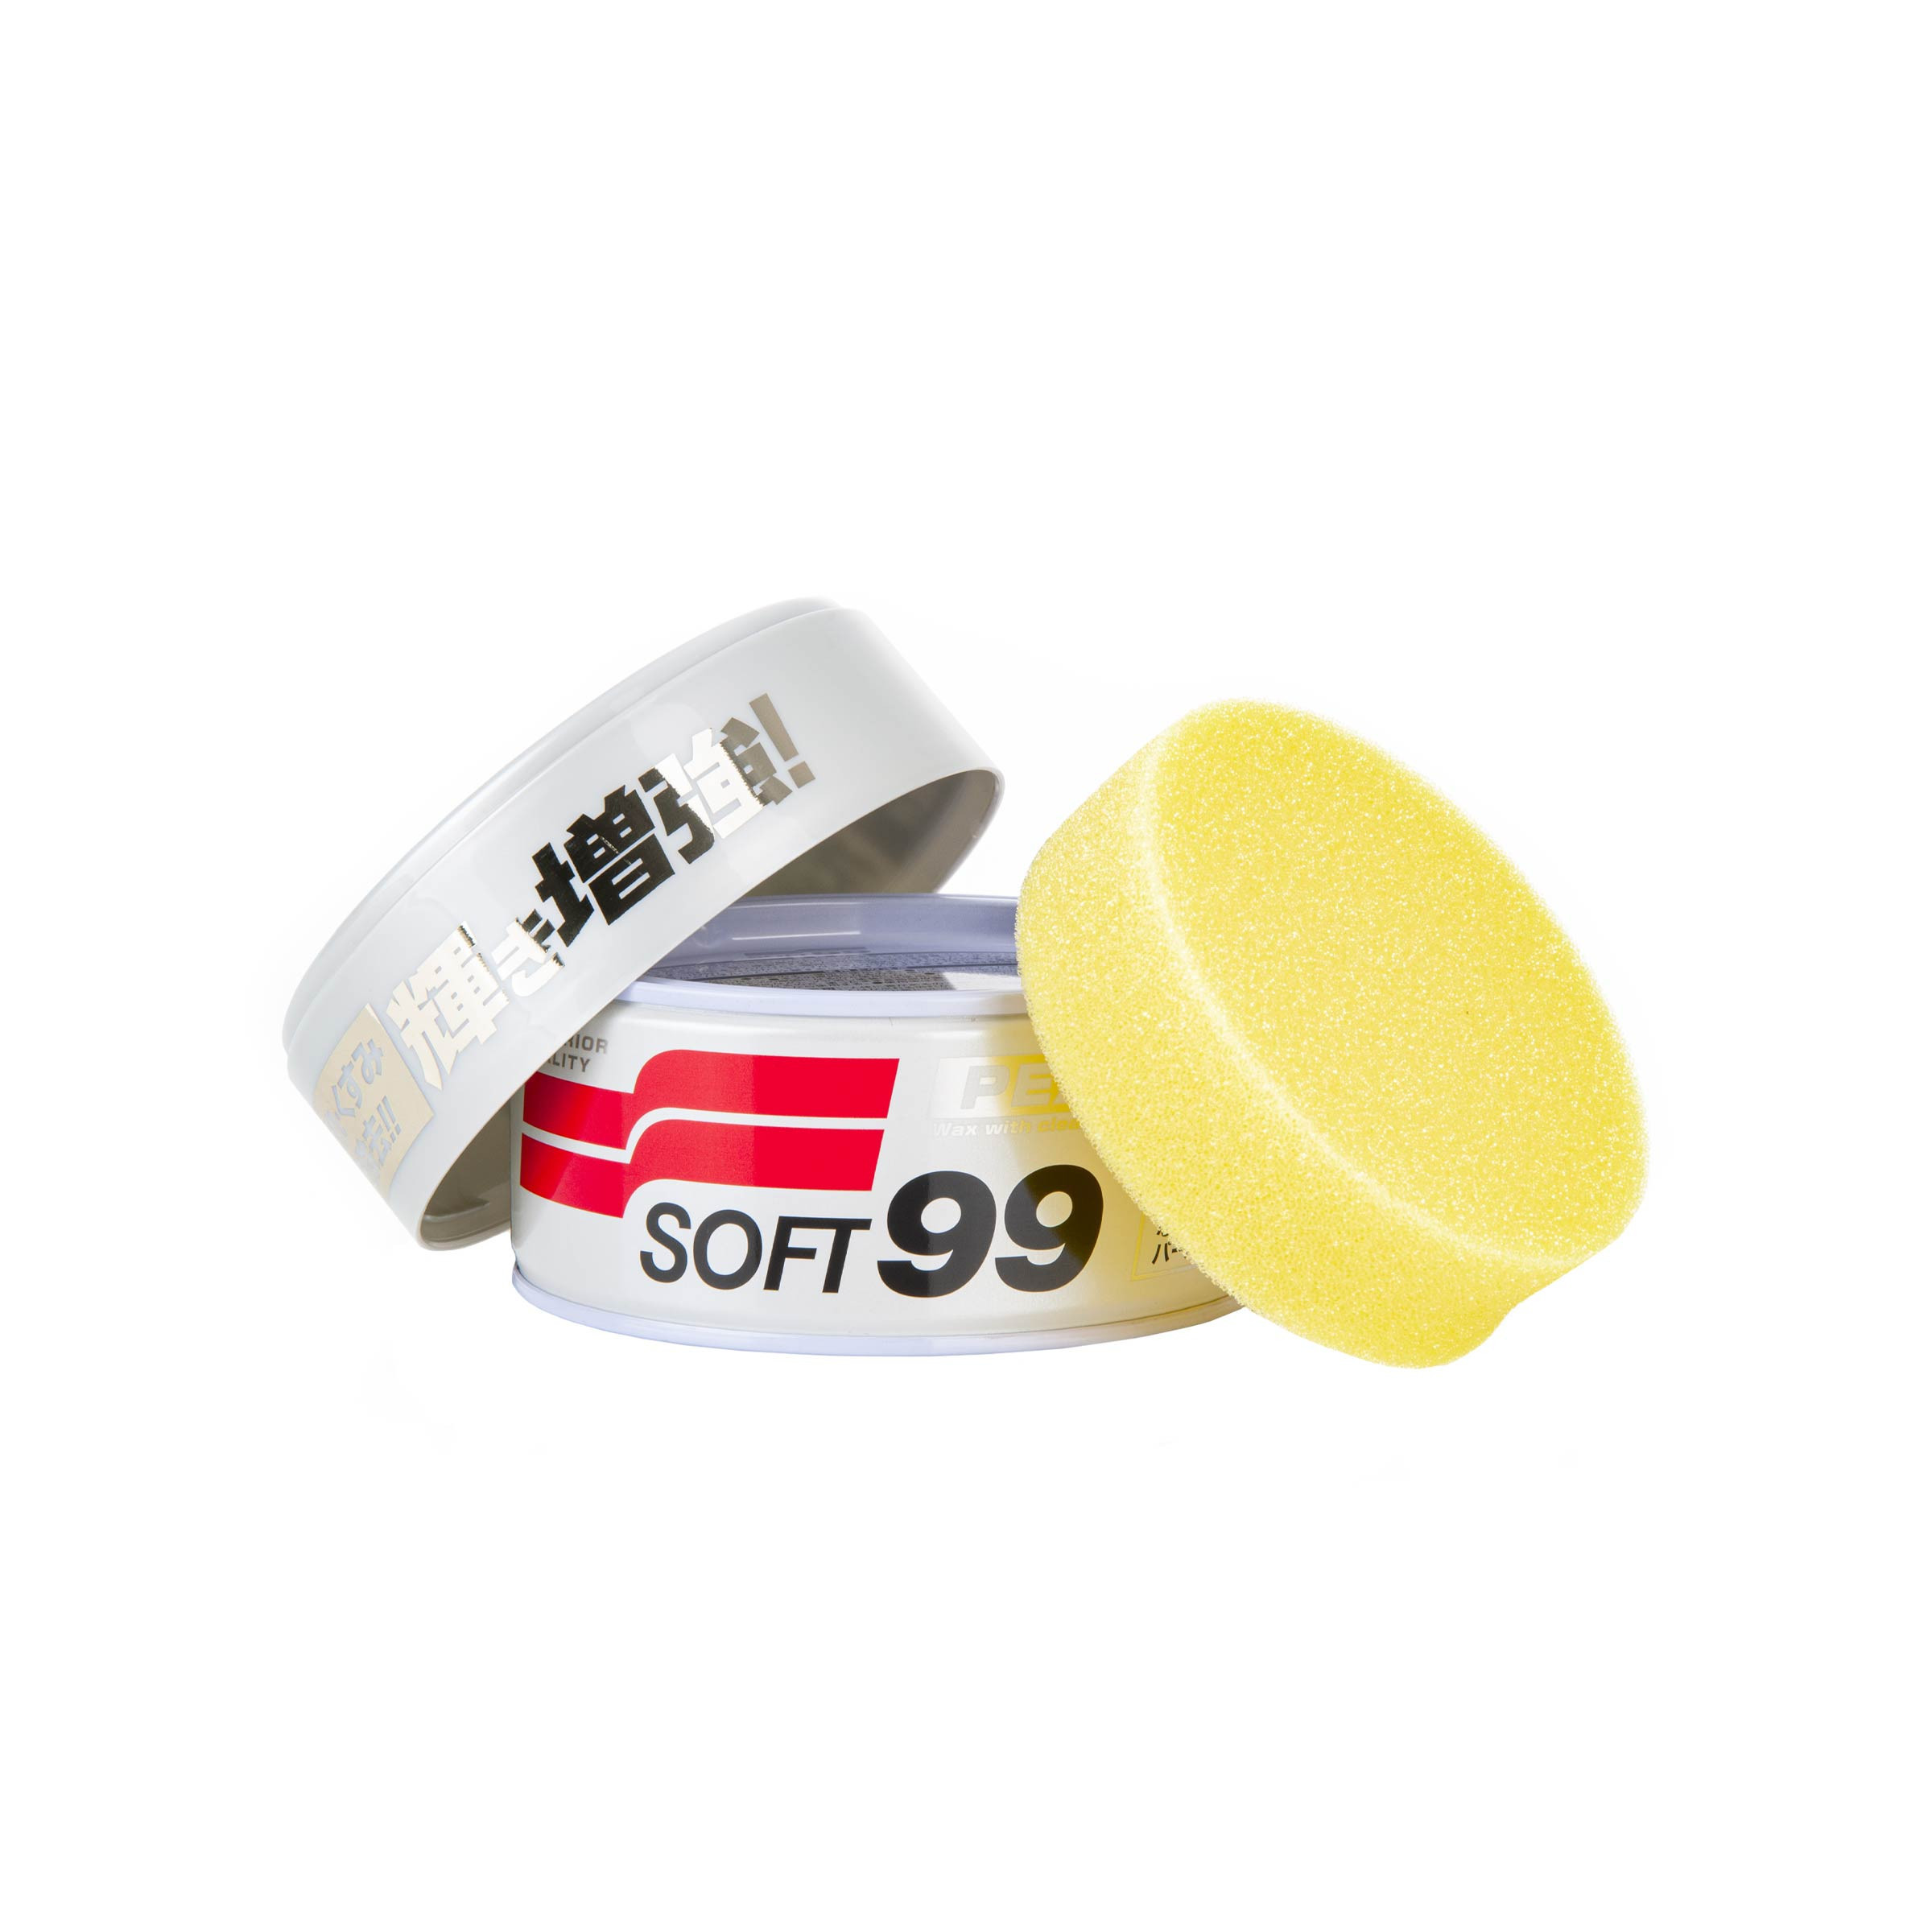 SOFT99 White Soft99 Wax soft car wax, 350 g